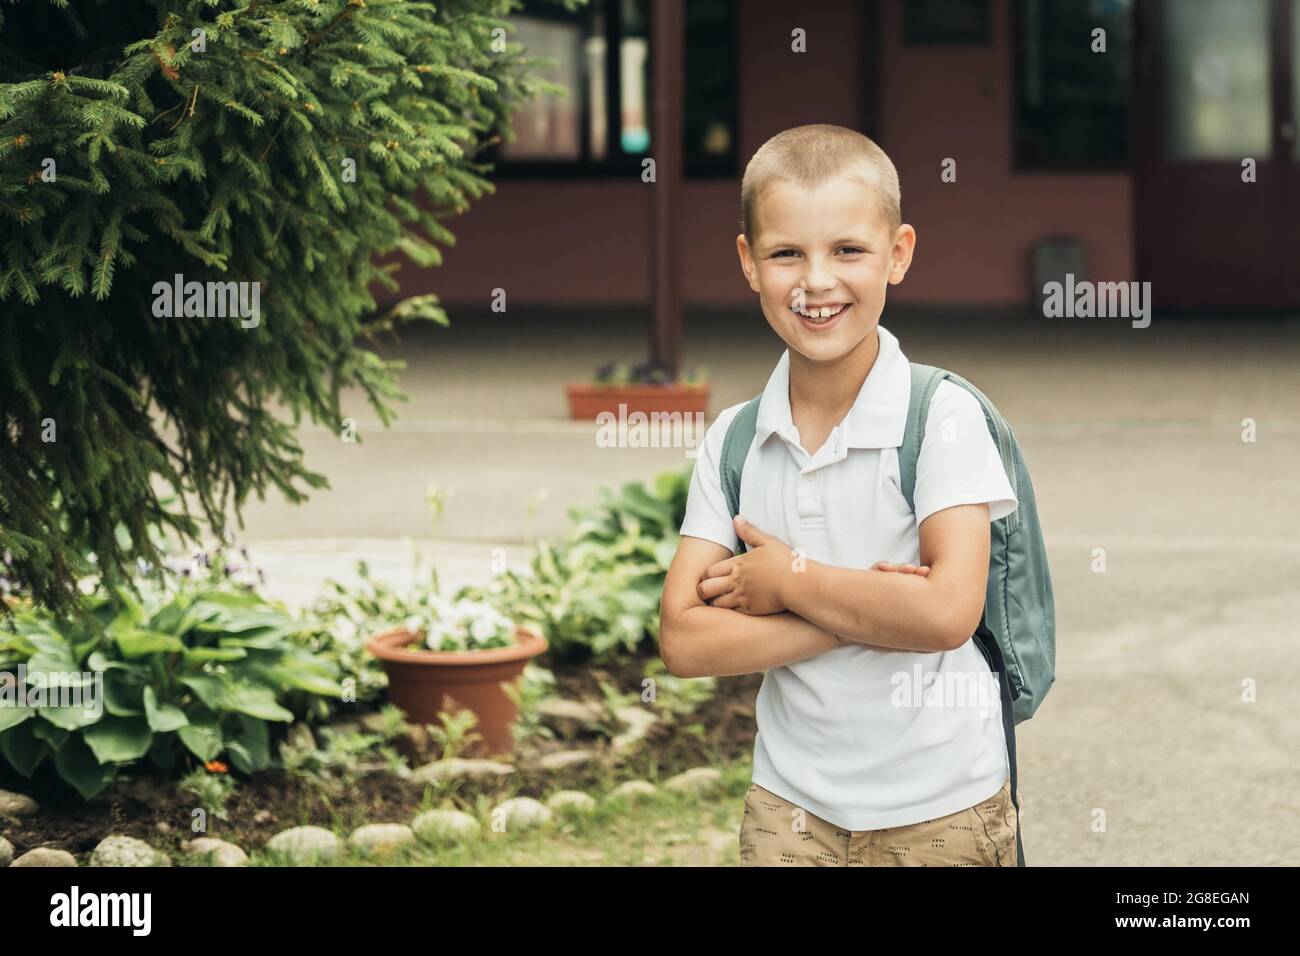 Ragazzo sorridente, studente di scuola elementare, che cammina a scuola con la borsa dietro la schiena. Foto Stock